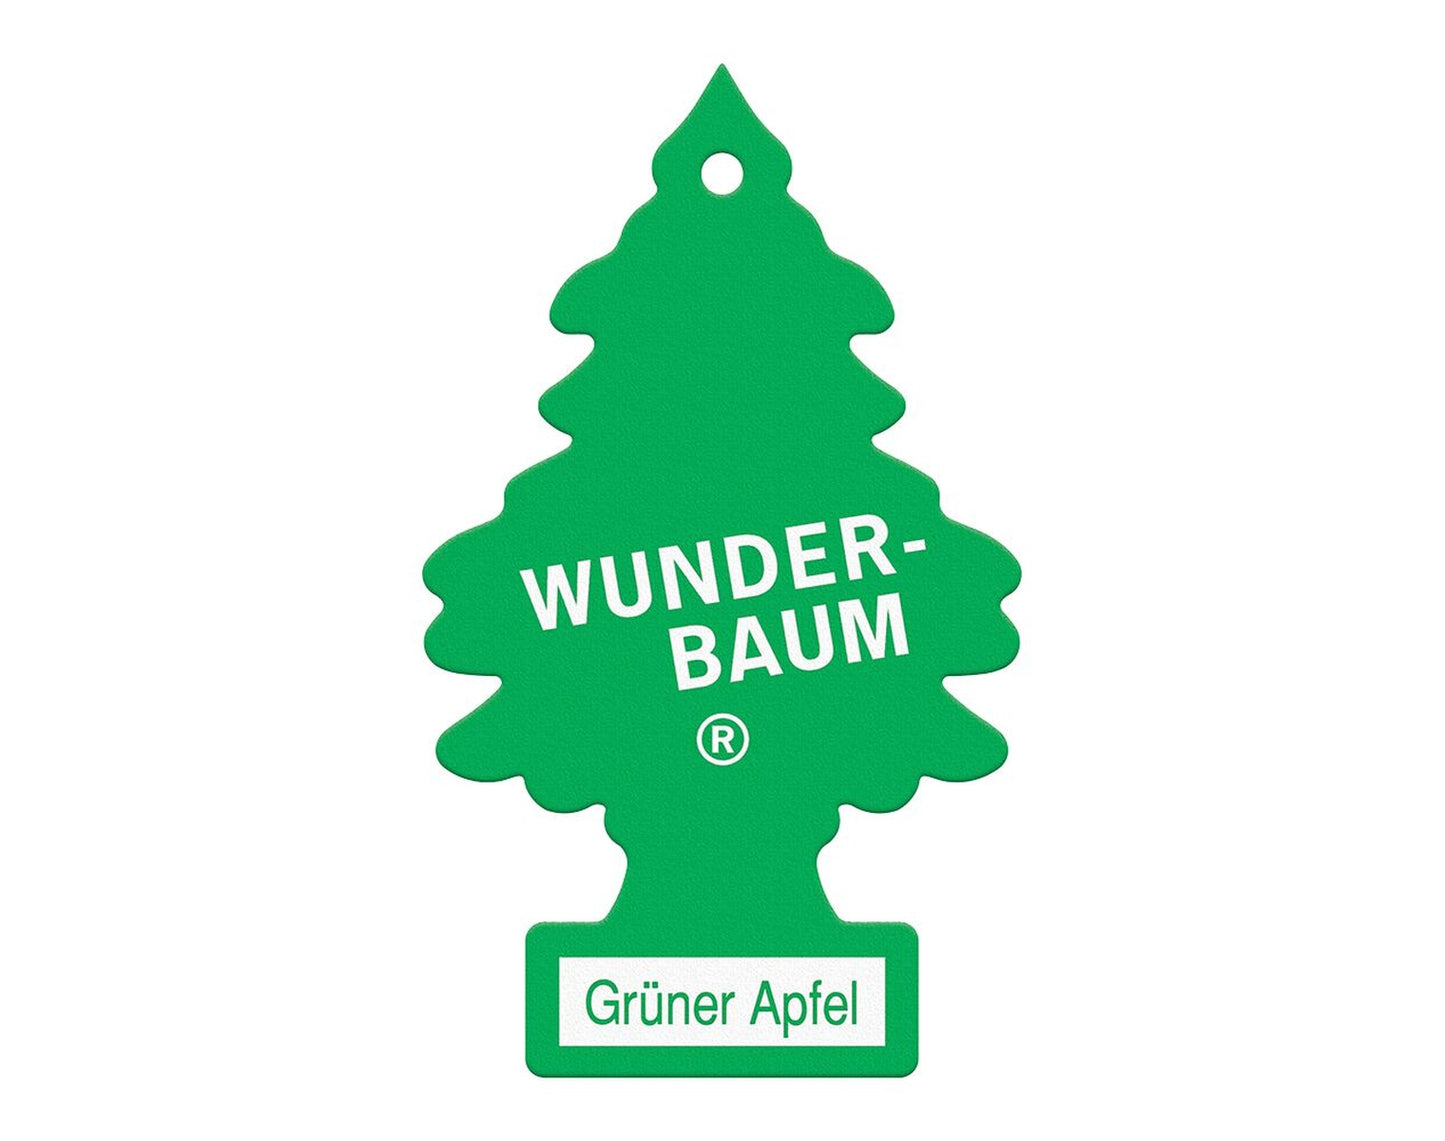 WUNDER-BAUM Grüner Apfel